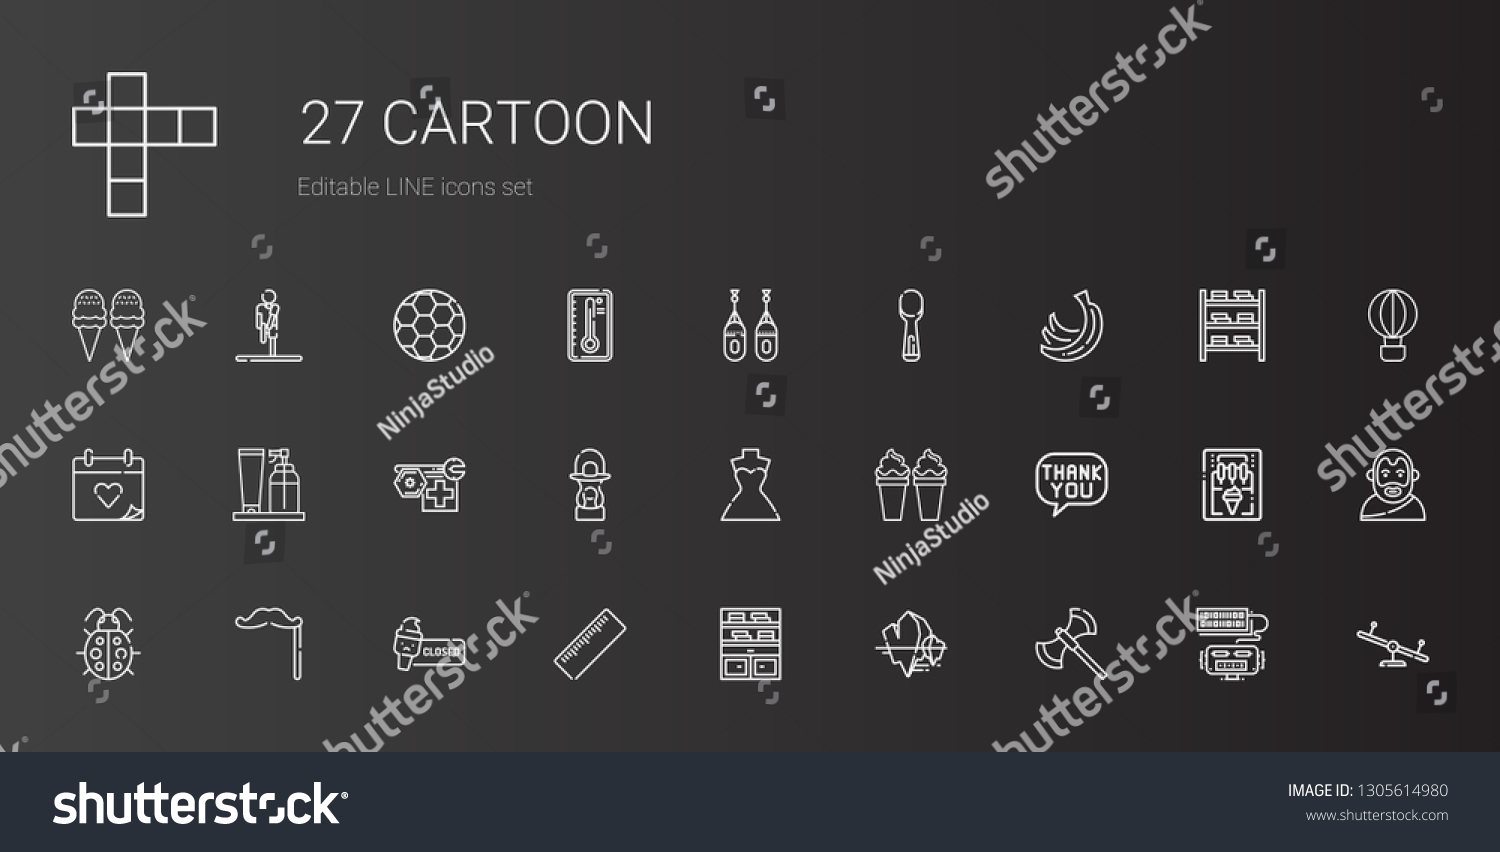 Cartoon Icons Set Collection Cartoon Axe Stock Vector Royalty